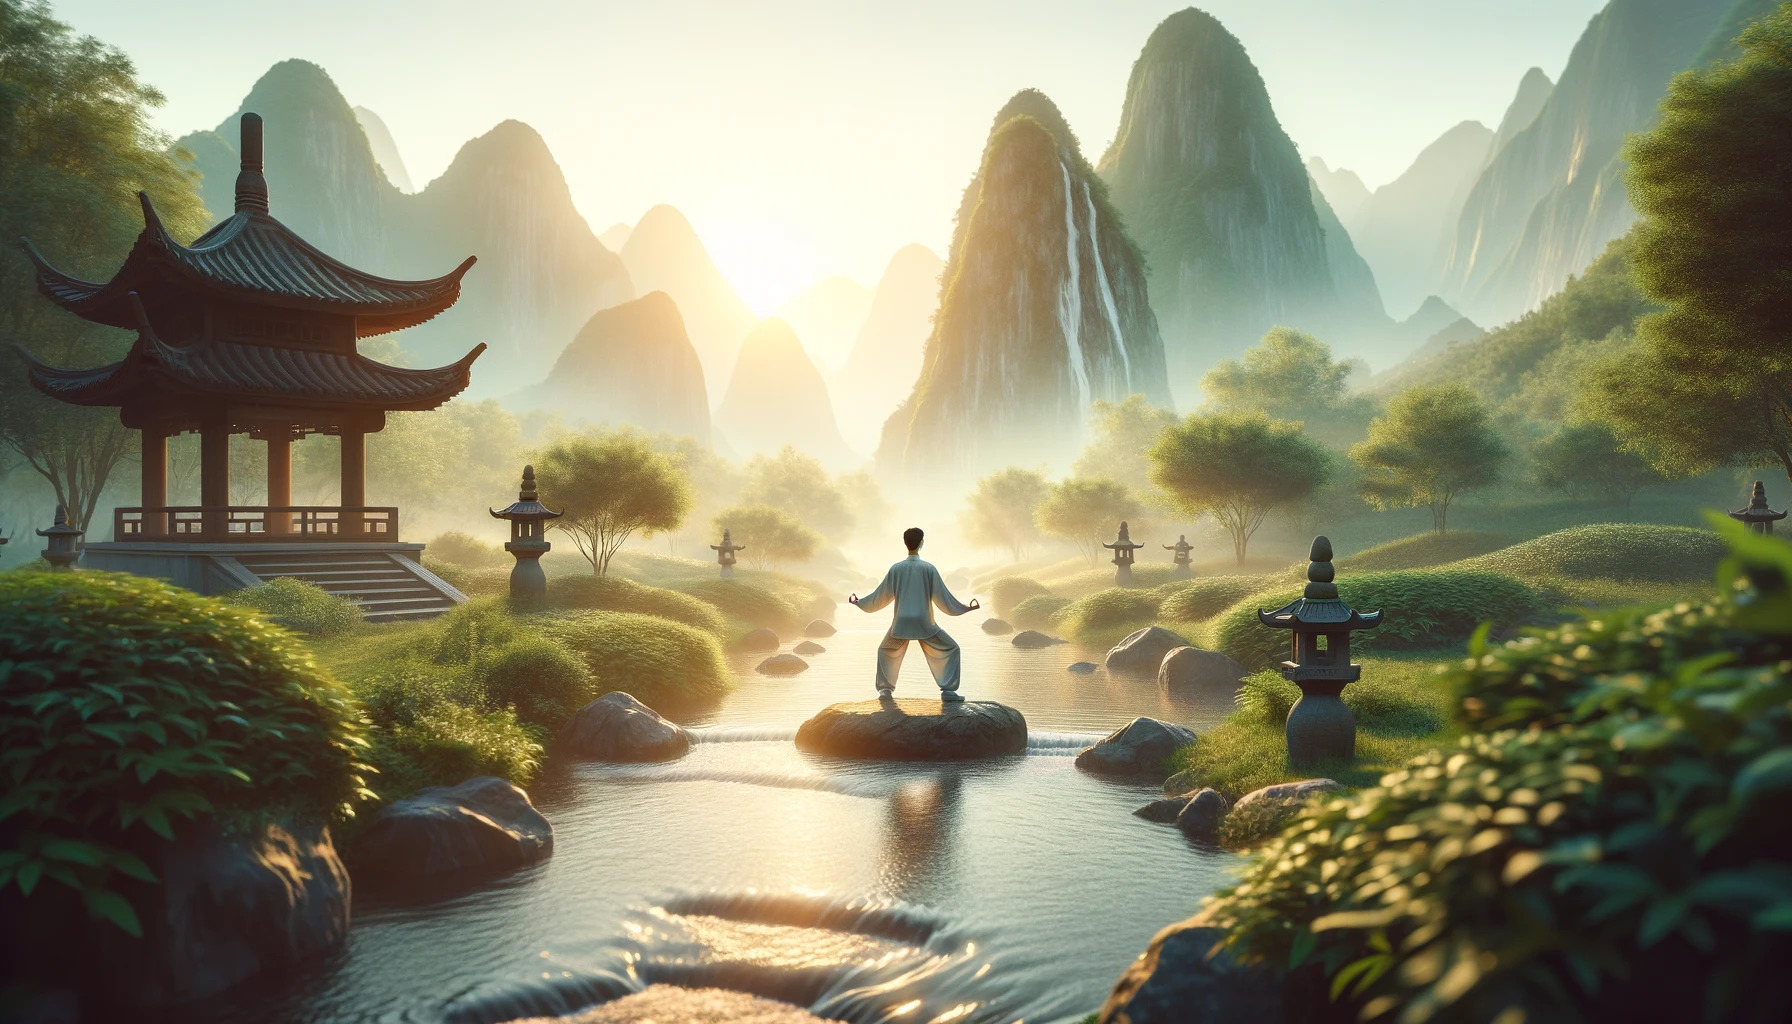 Čchi Kung: starodávná čínská praxe kombinuje fyzické cvičení a meditaci